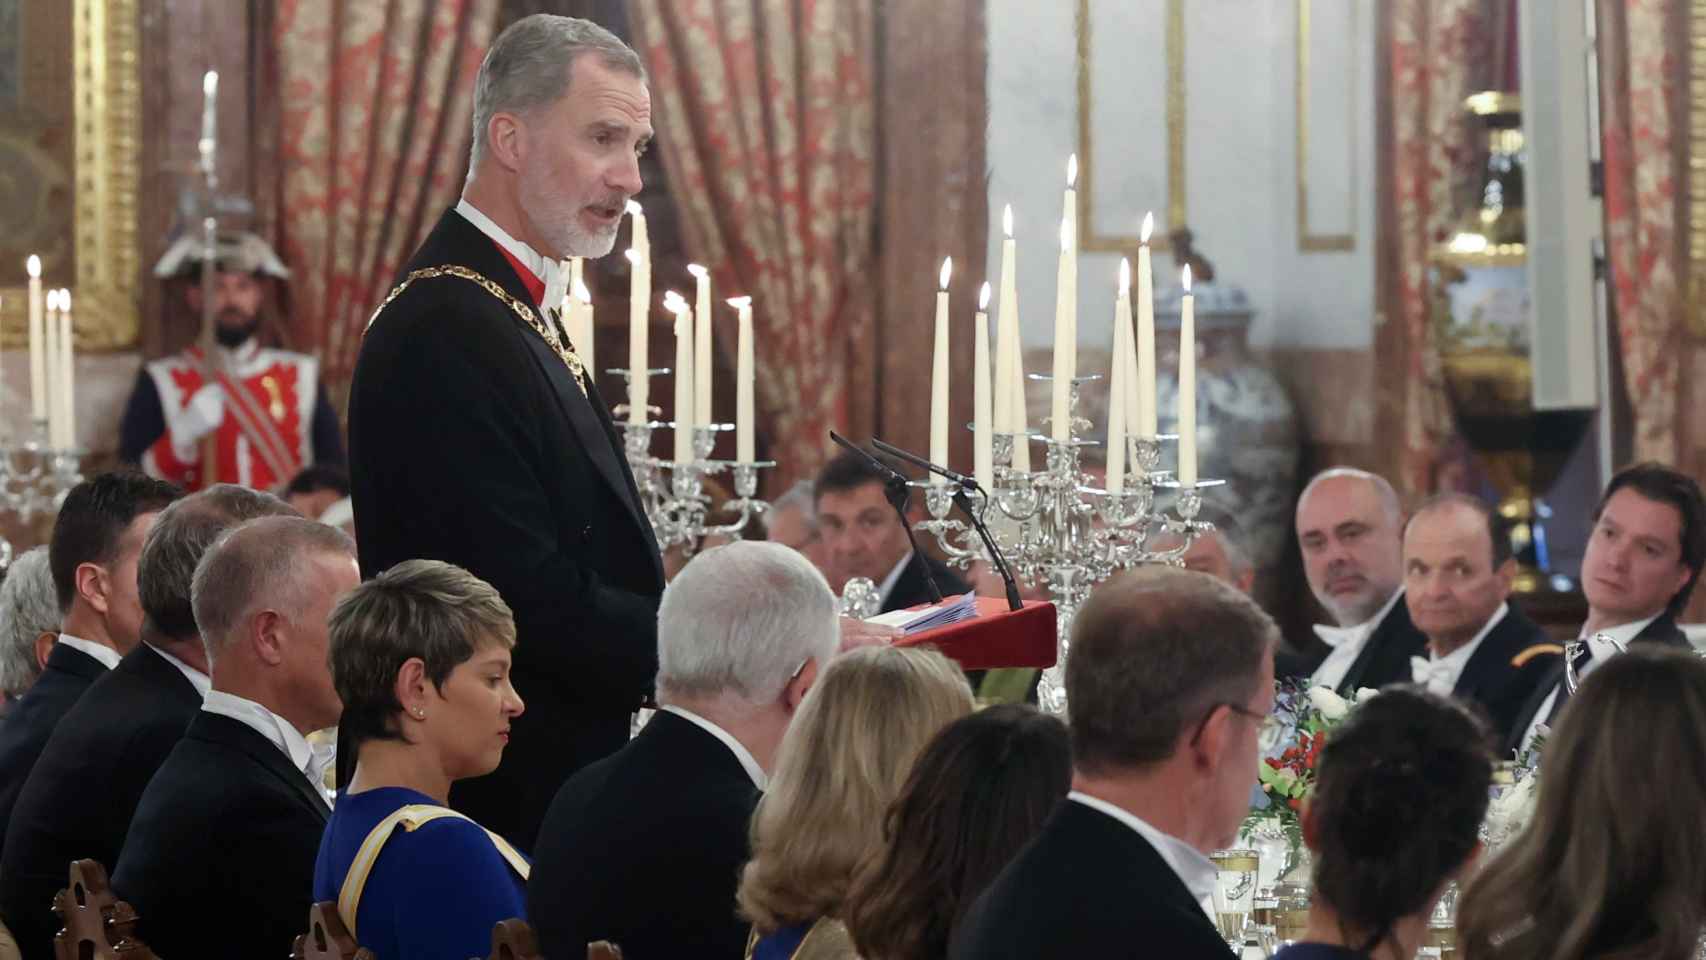 El Rey confirmó el viaje de su esposa en su discurso en la cena de gala.